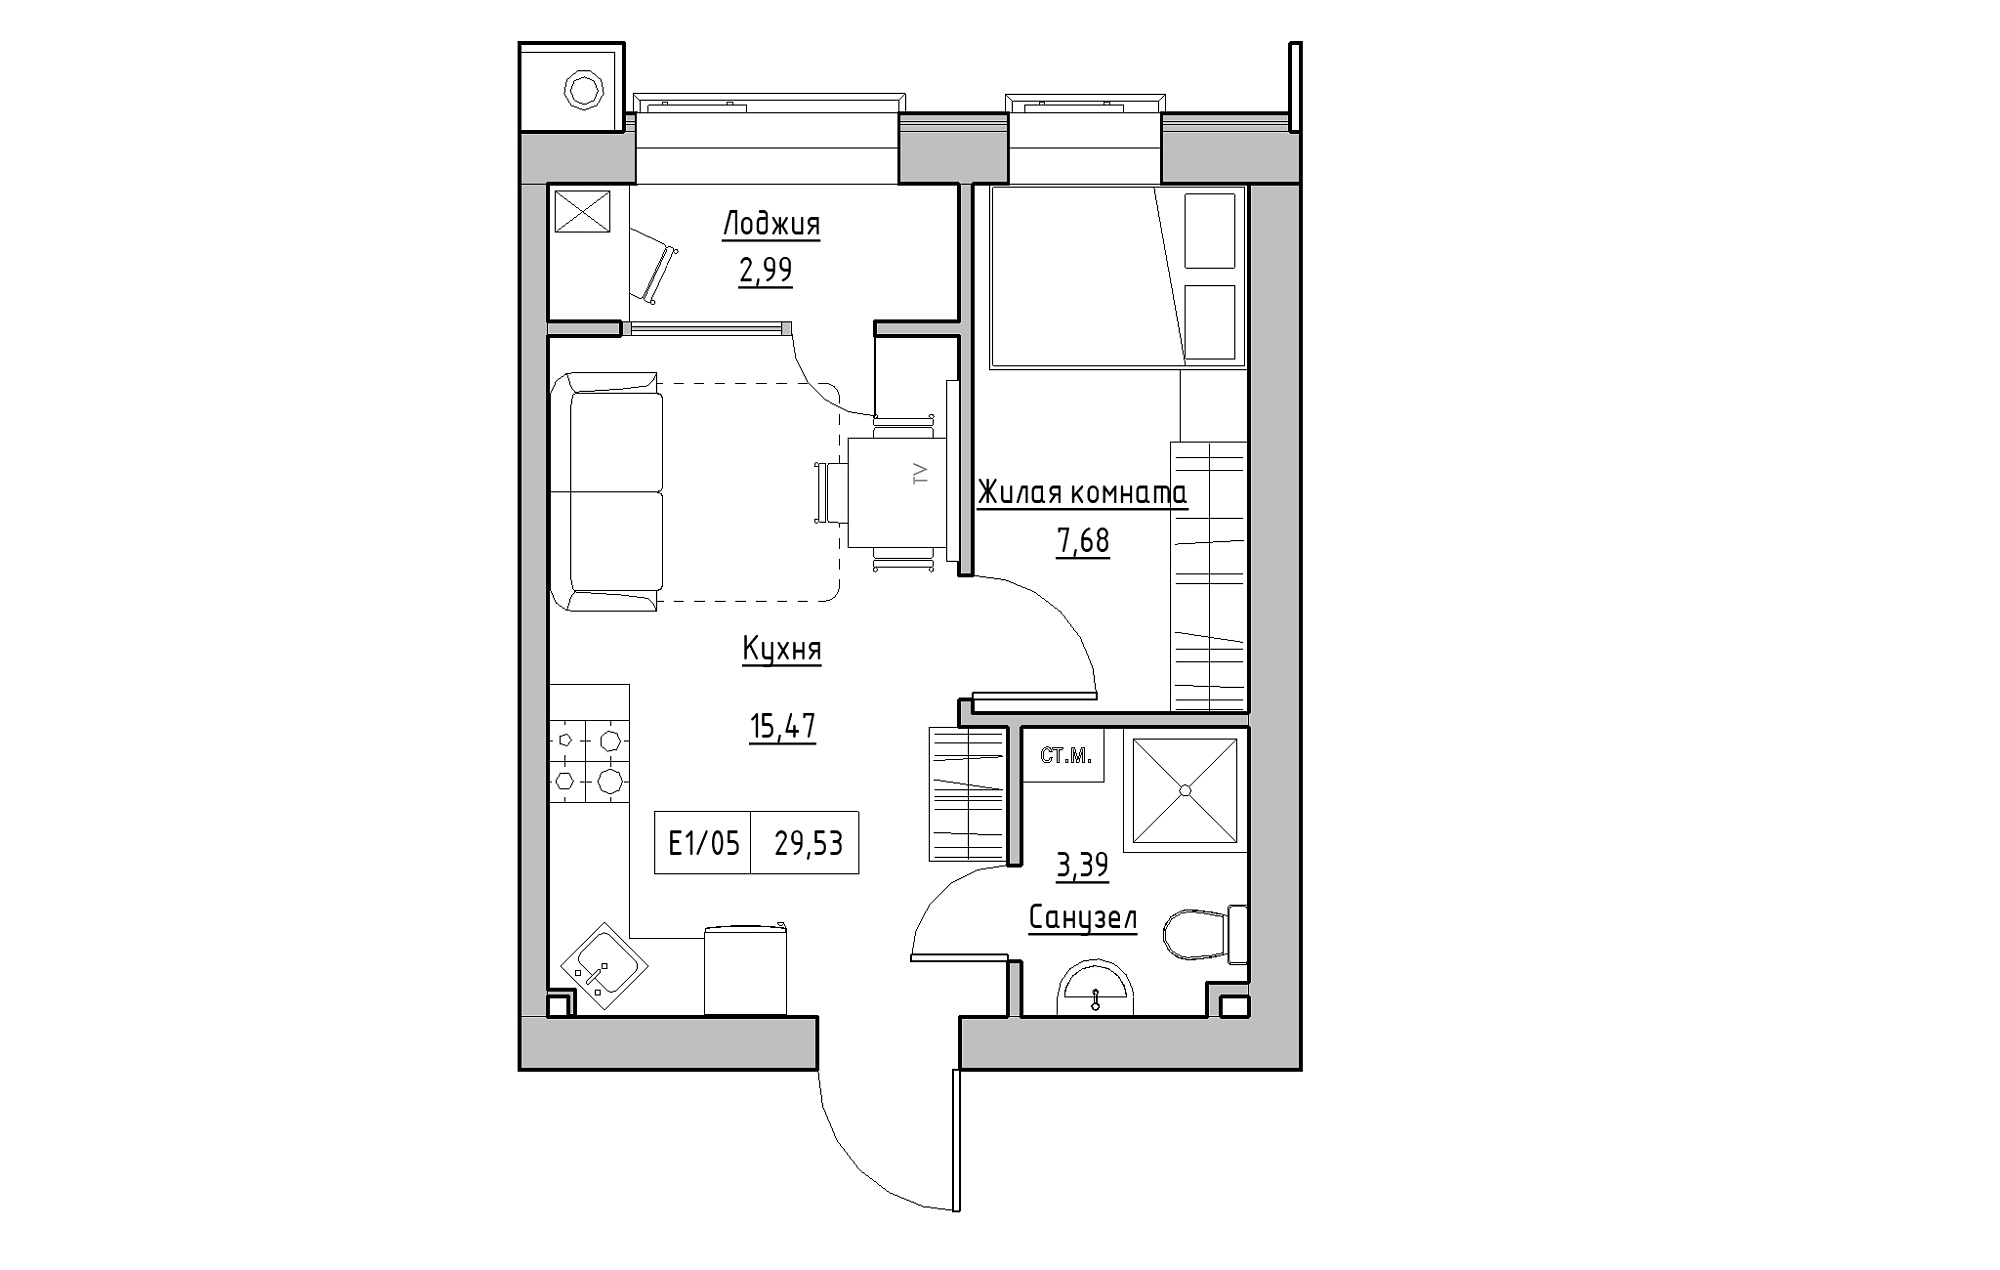 Планировка 1-к квартира площей 29.53м2, KS-013-01/0008.